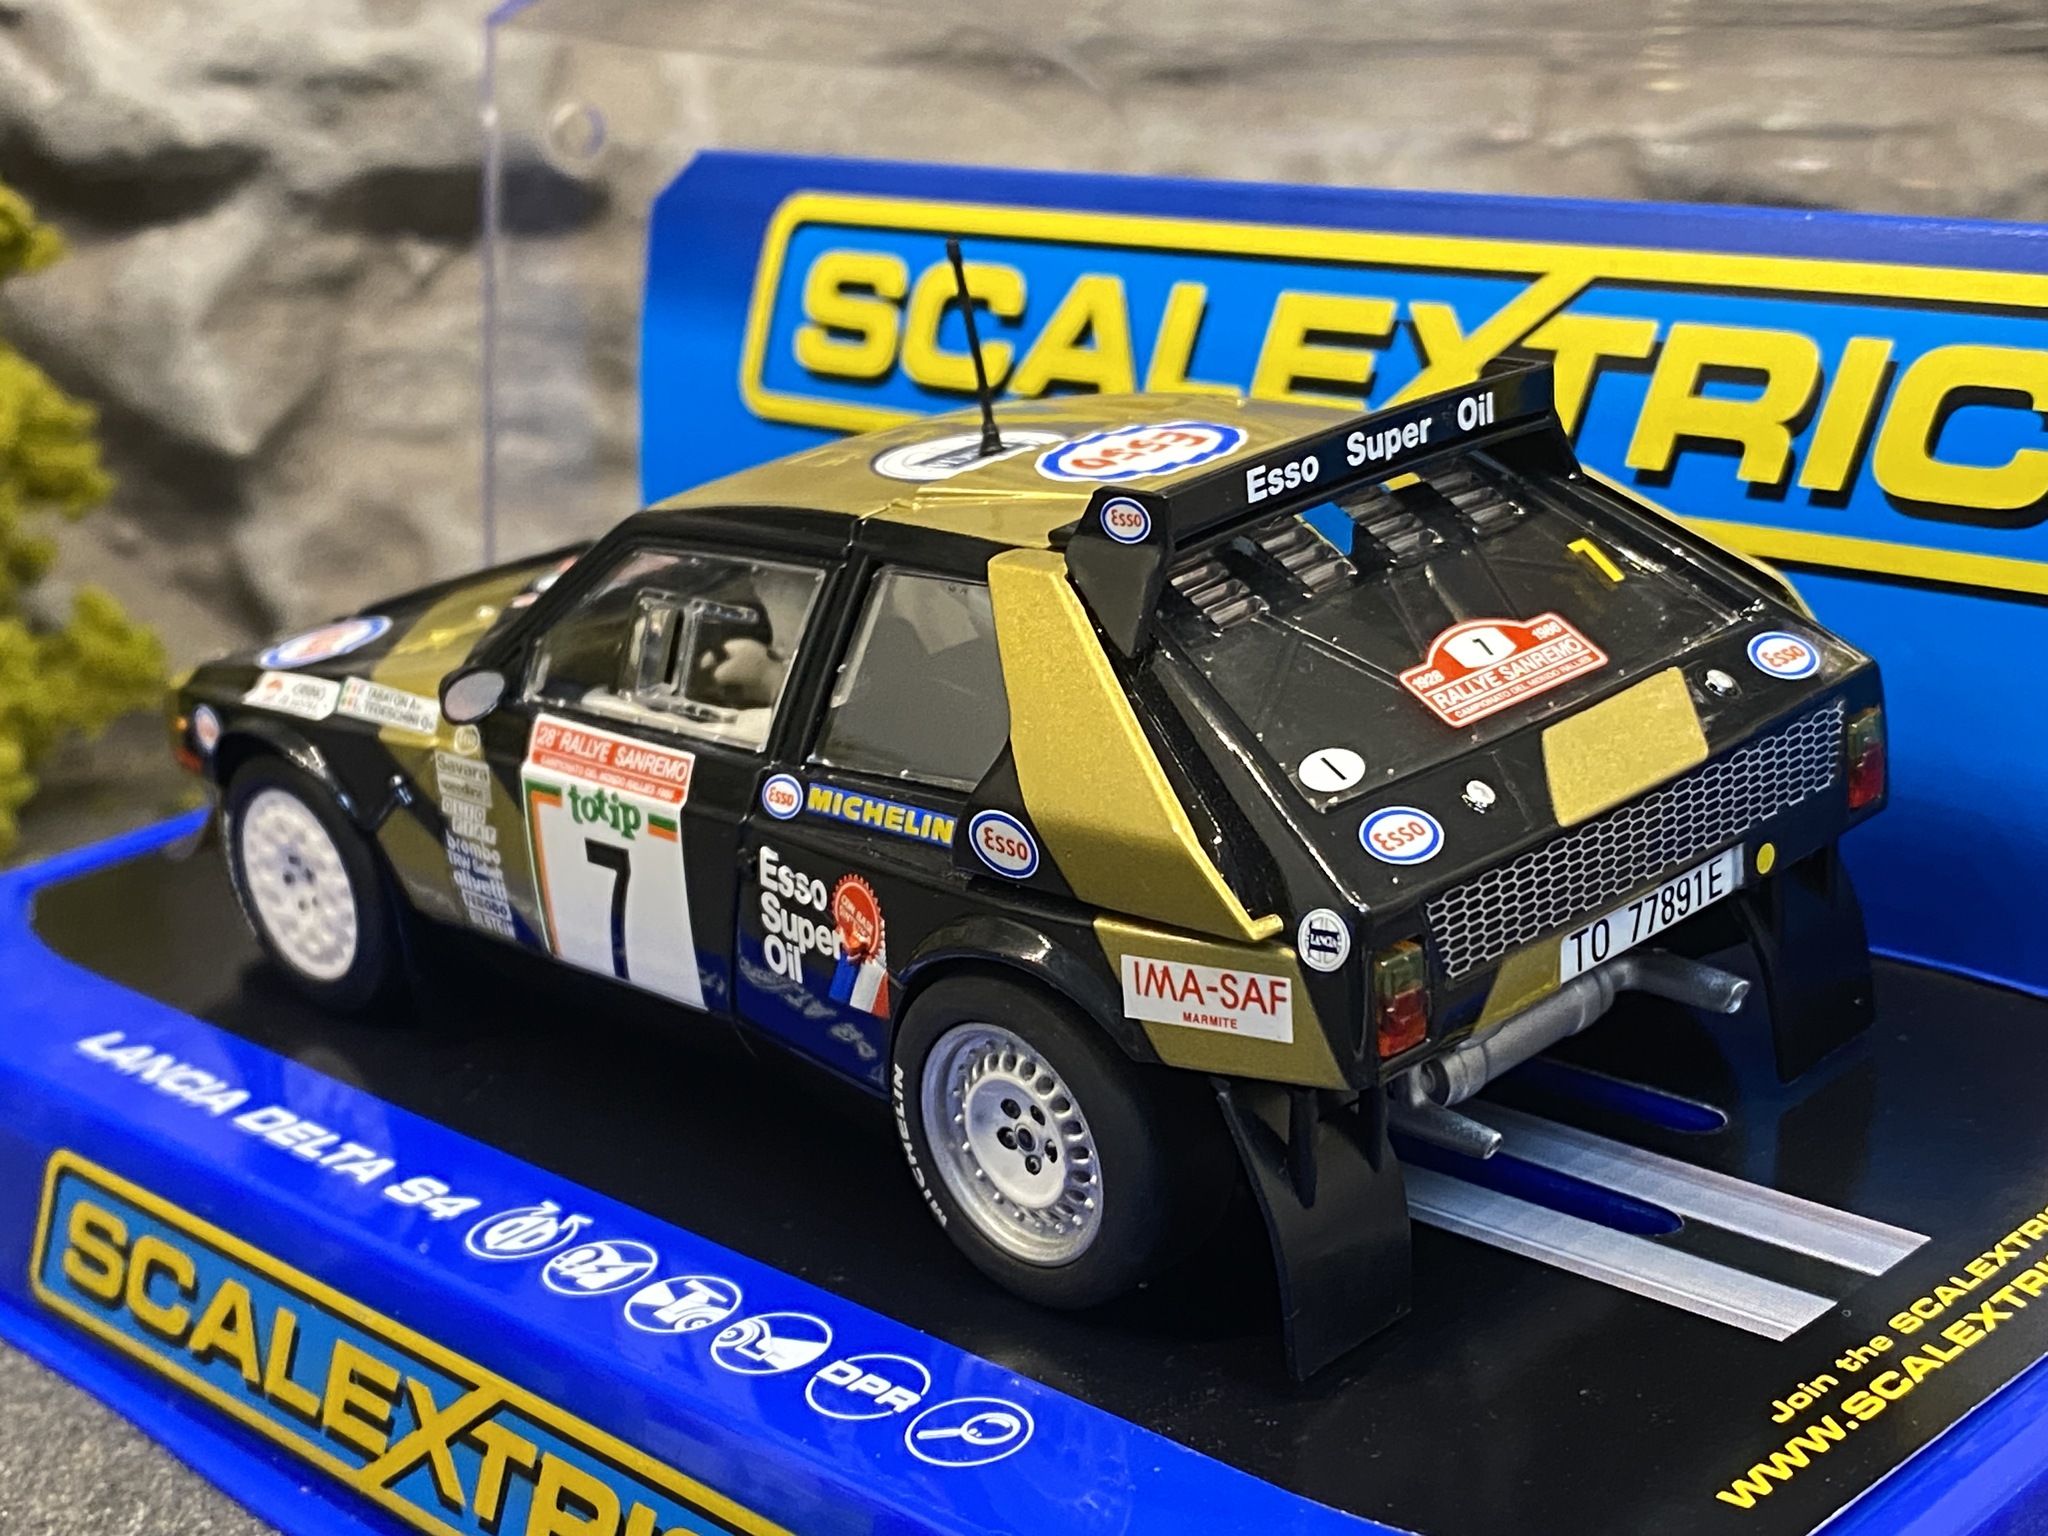 Skala 1/32 Lancia Delta S4 - F.Tabaton, 1986 San Remo Rally fr Scalextric